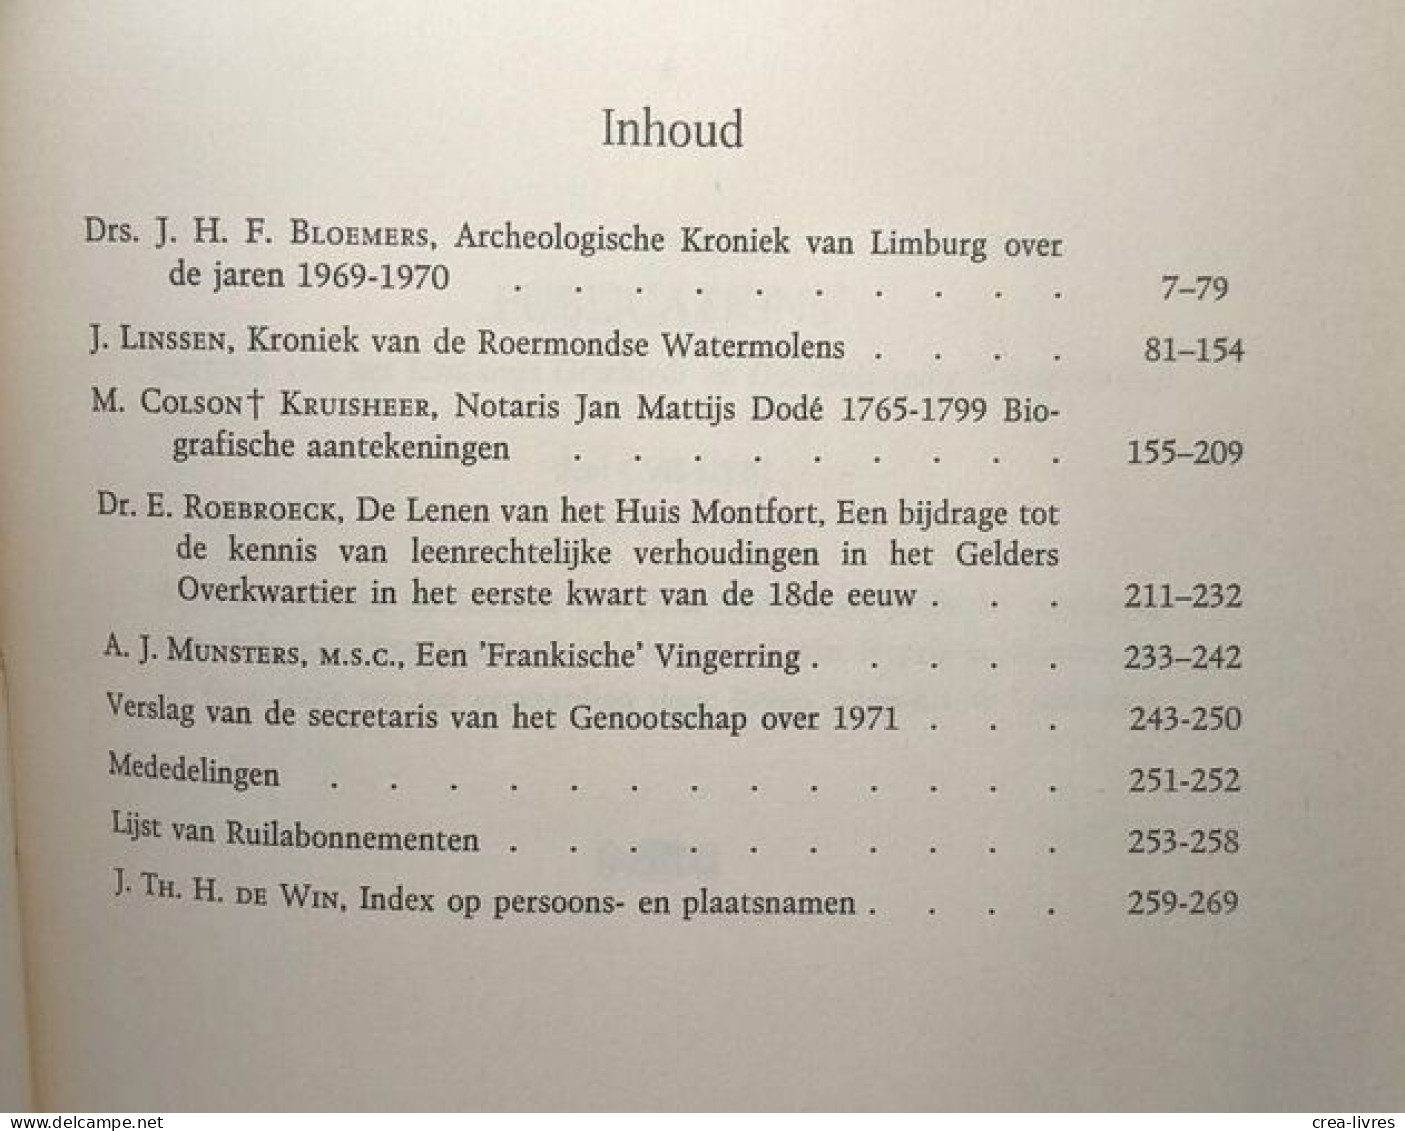 Publications De La Société Historique Et Archéologique Dans Le Limbourg Tome CVII - CVIII 1971 - 1972 "Vis Unita Major" - Archeologie